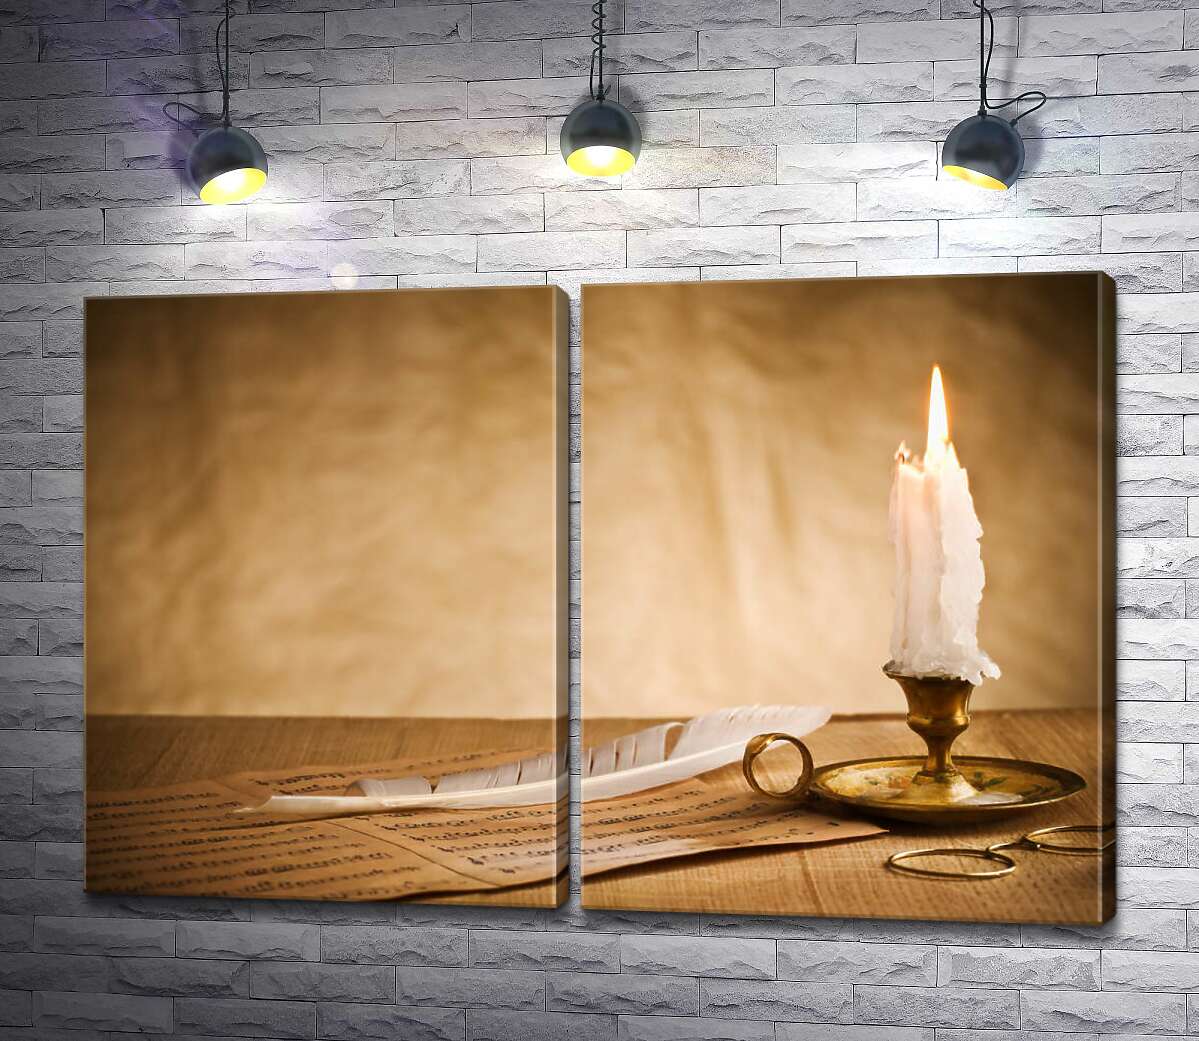 модульная картина Теплый огонек белой свечи освещает письмо и перо